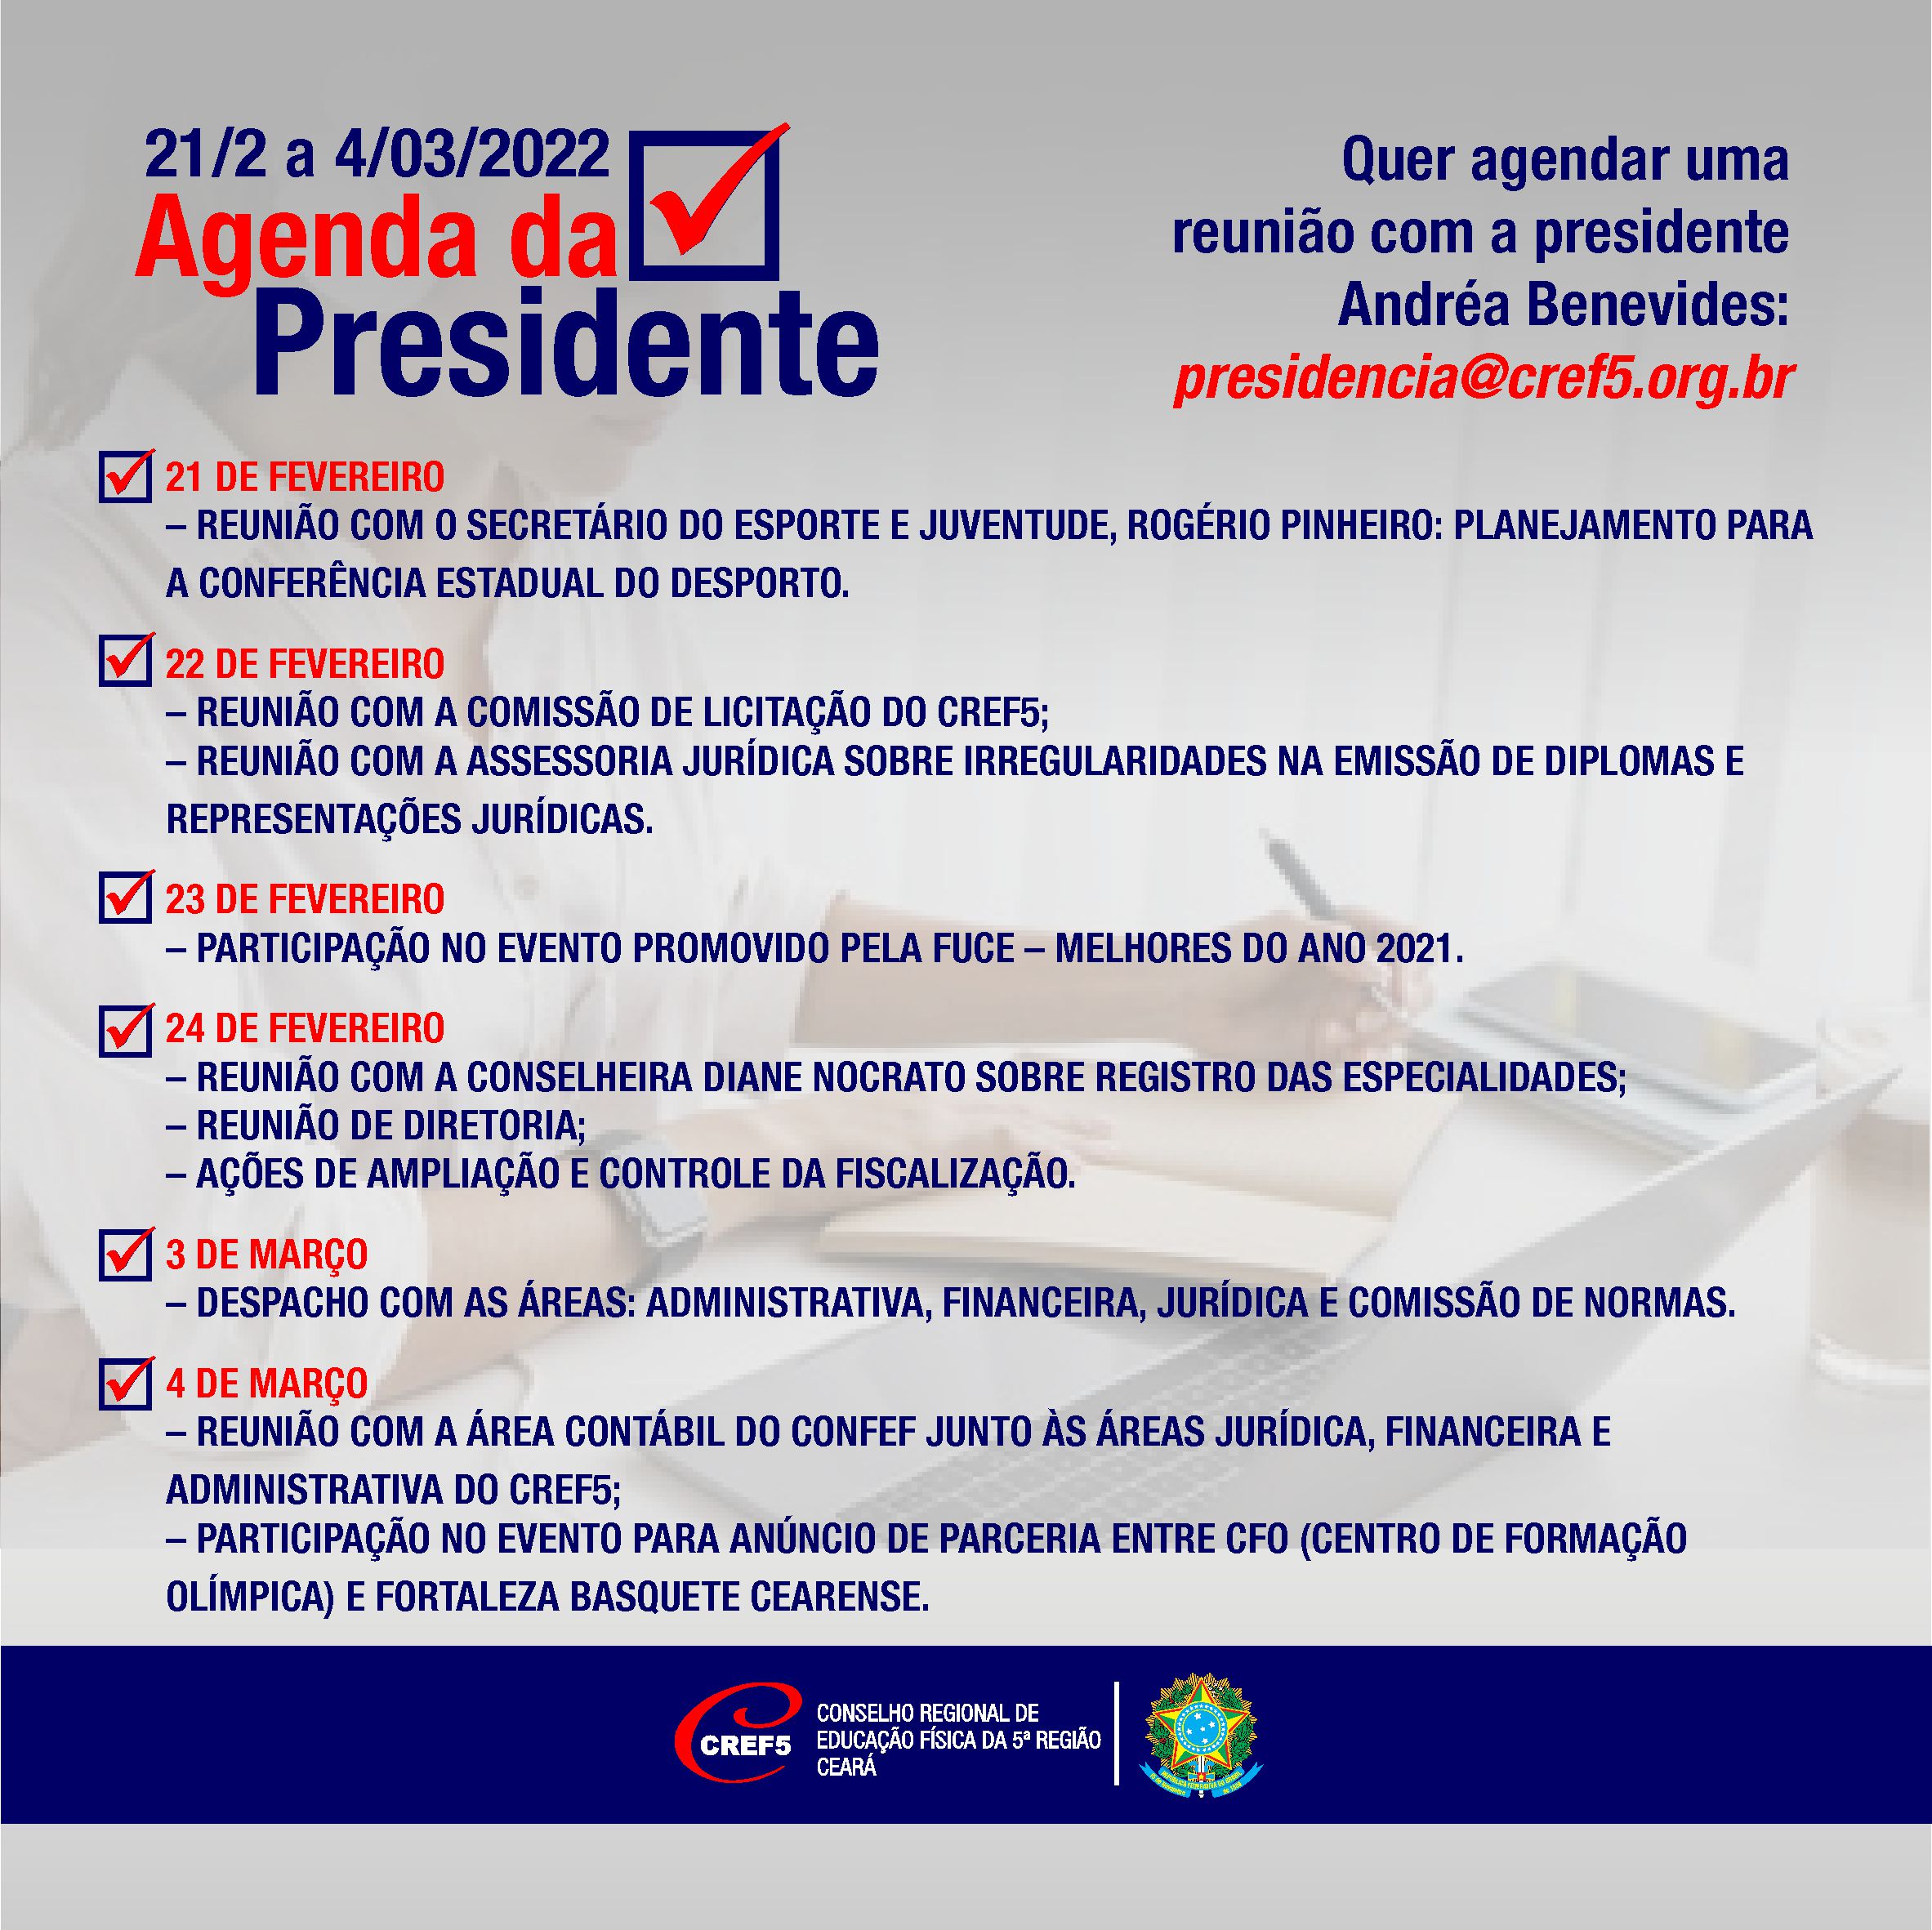 Agenda da presidente entre os dias 21/2 e 4/03/2022